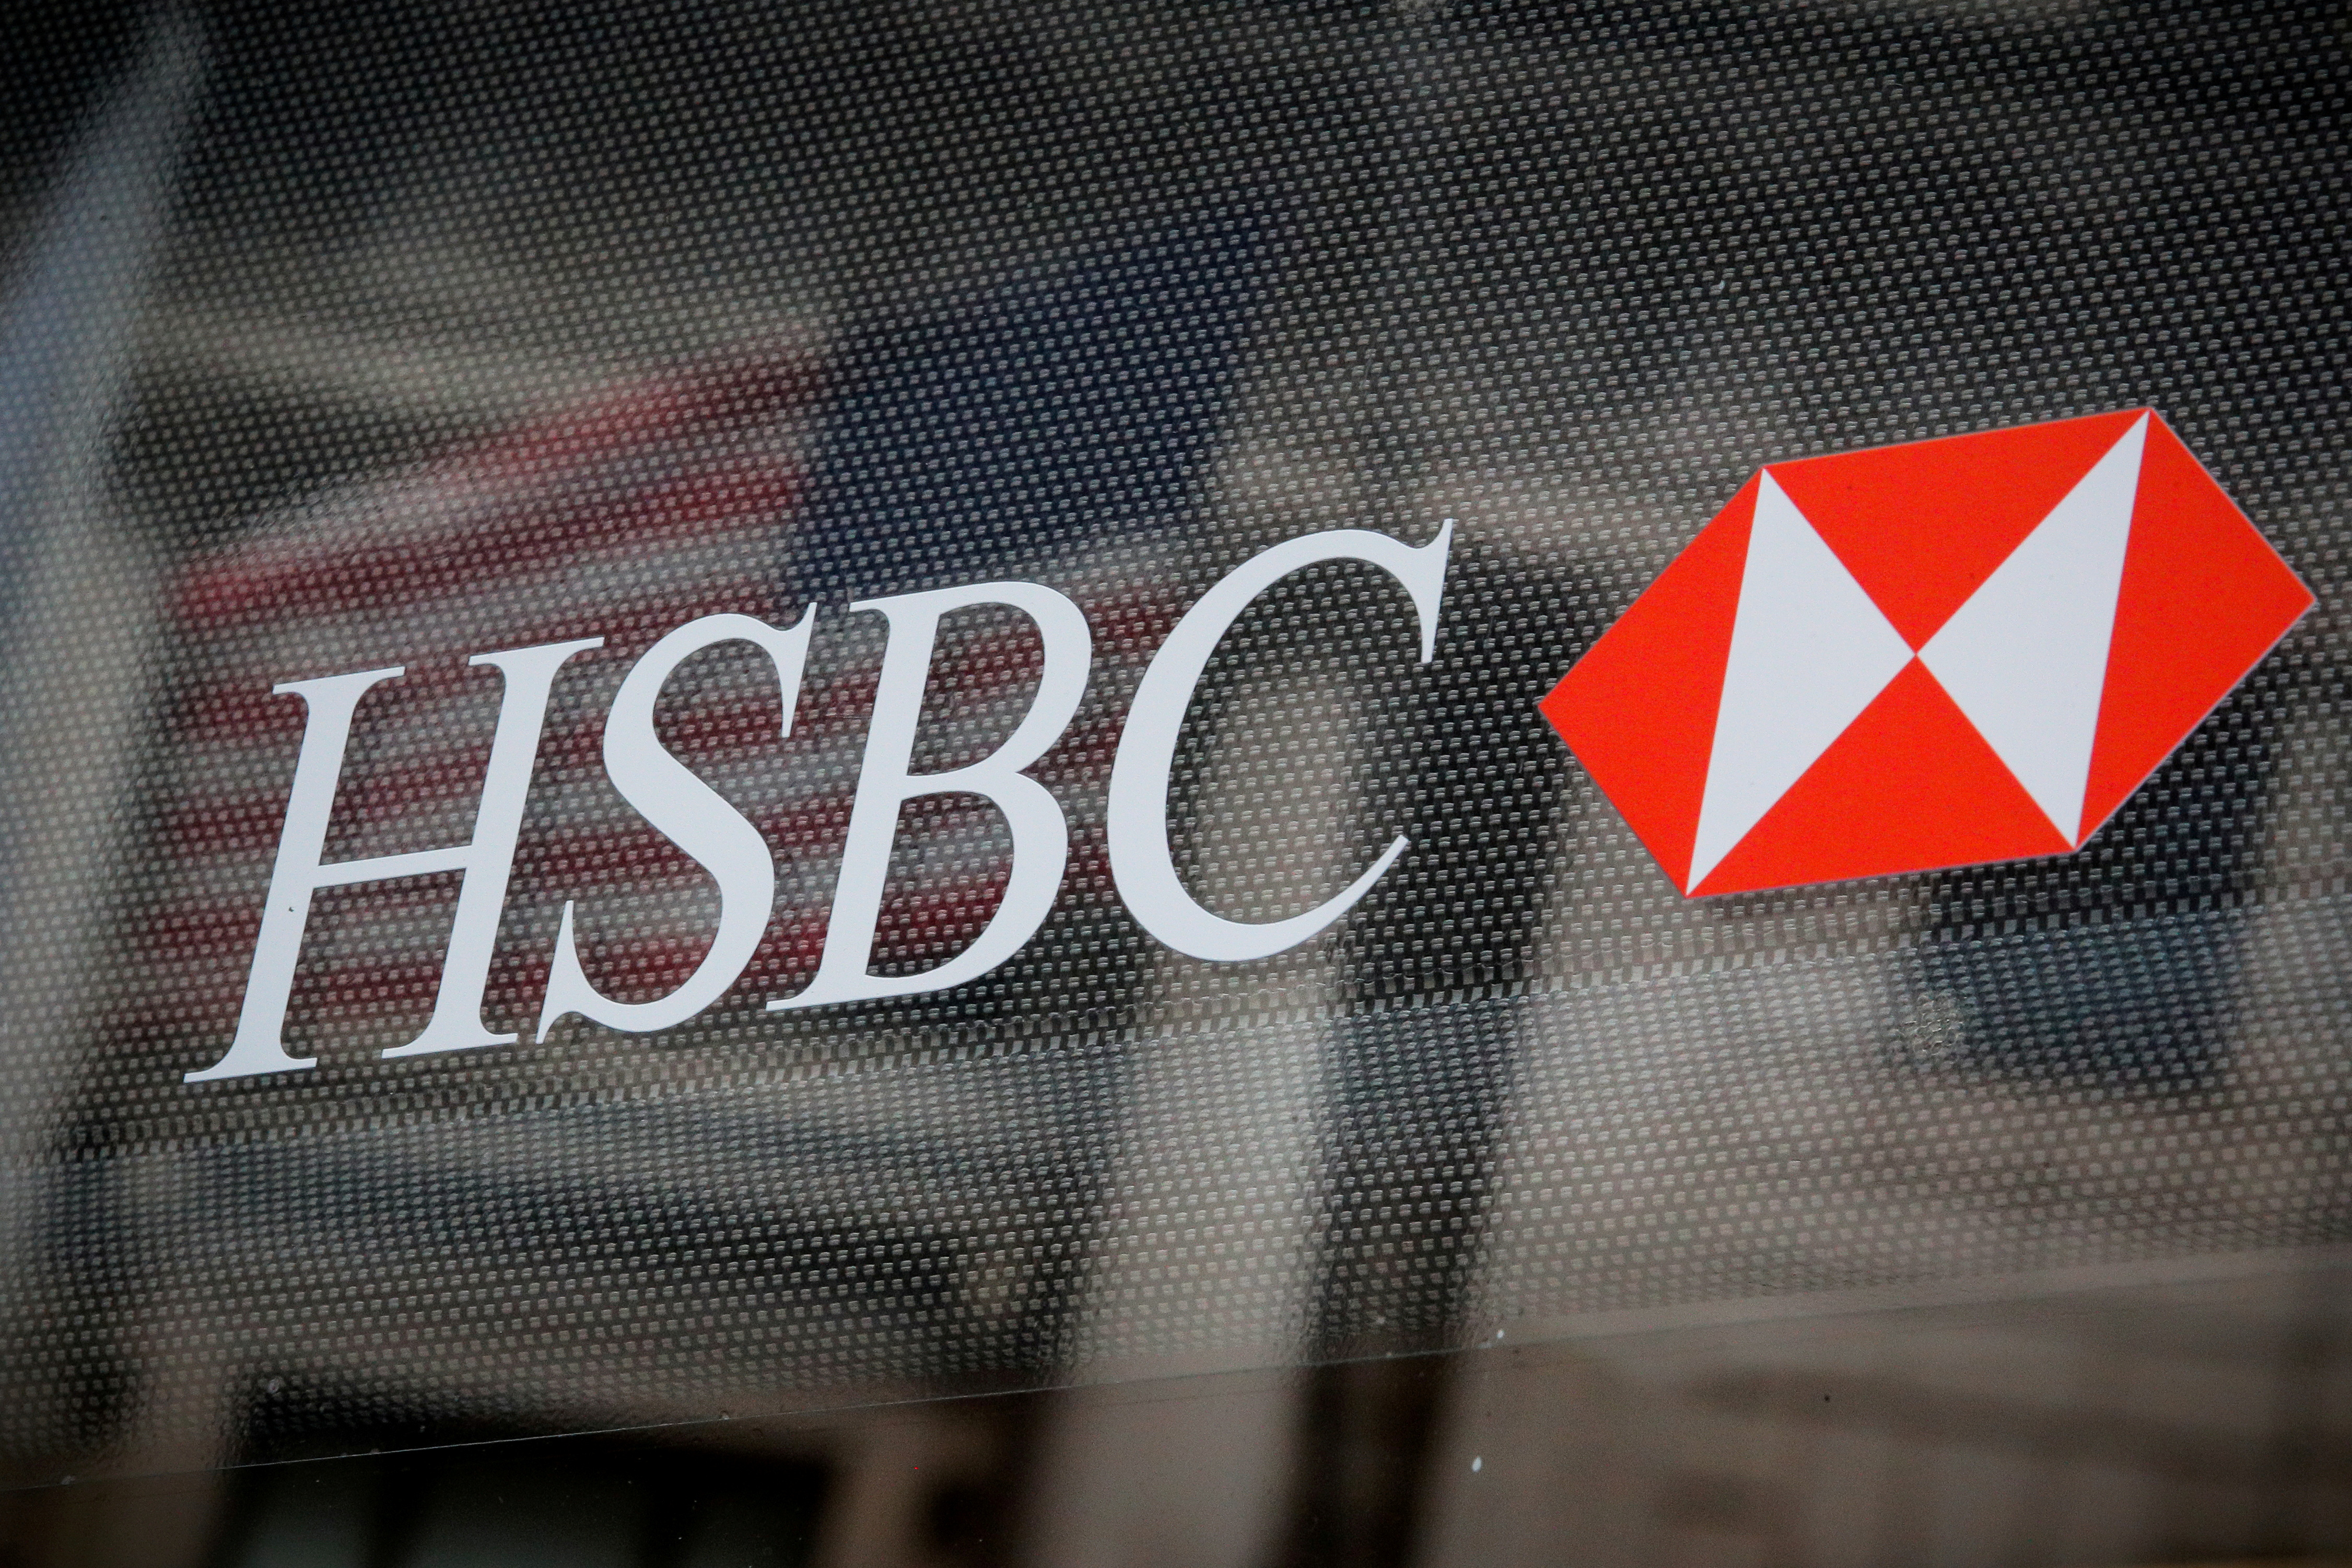 HSBC voit son bénéfice net doubler au premier semestre, après plusieurs années de recentrage de ses activités